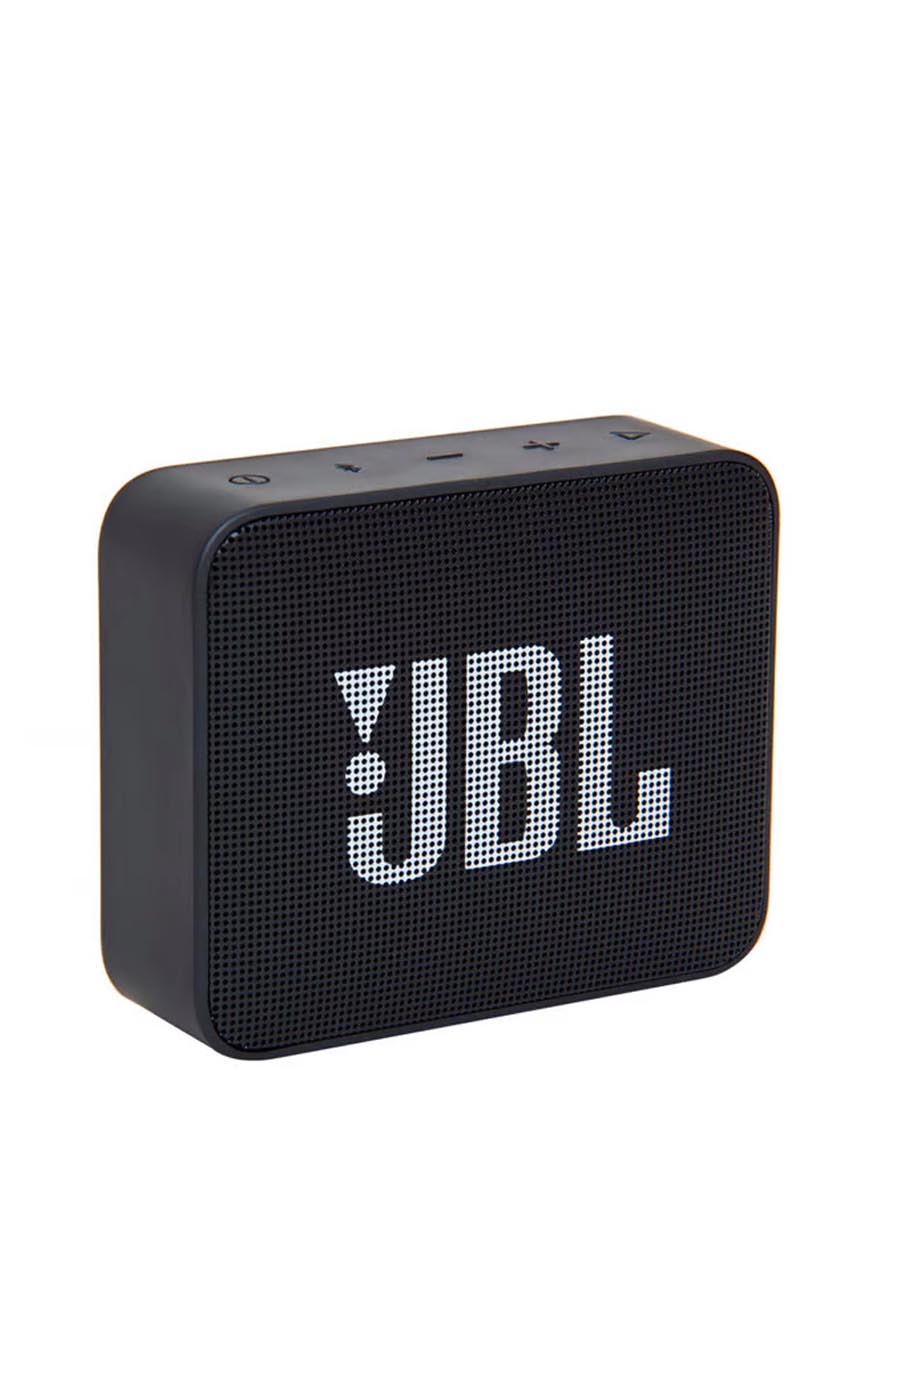 Caixa de som portátil com Bluetooth Jbl go 2